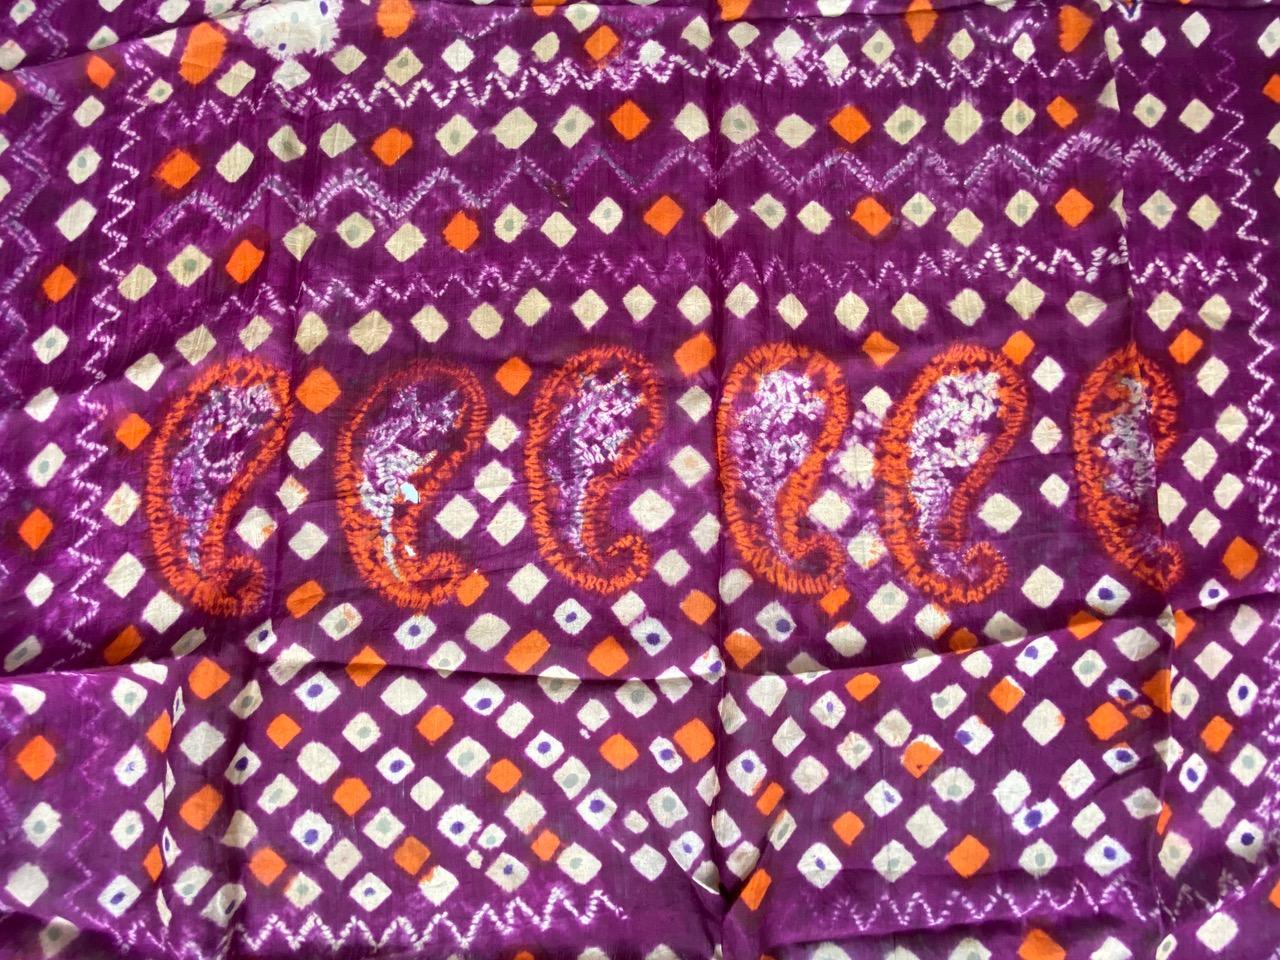 Ce magnifique tissu d'épaule de cérémonie en soie fine tie dye de Palembang, Sumatra, présente de superbes contrastes de couleurs et une frange métallique. Début du 20ème siècle.

Il y a 2 très petits trous montrés sur la dernière image, à prévoir